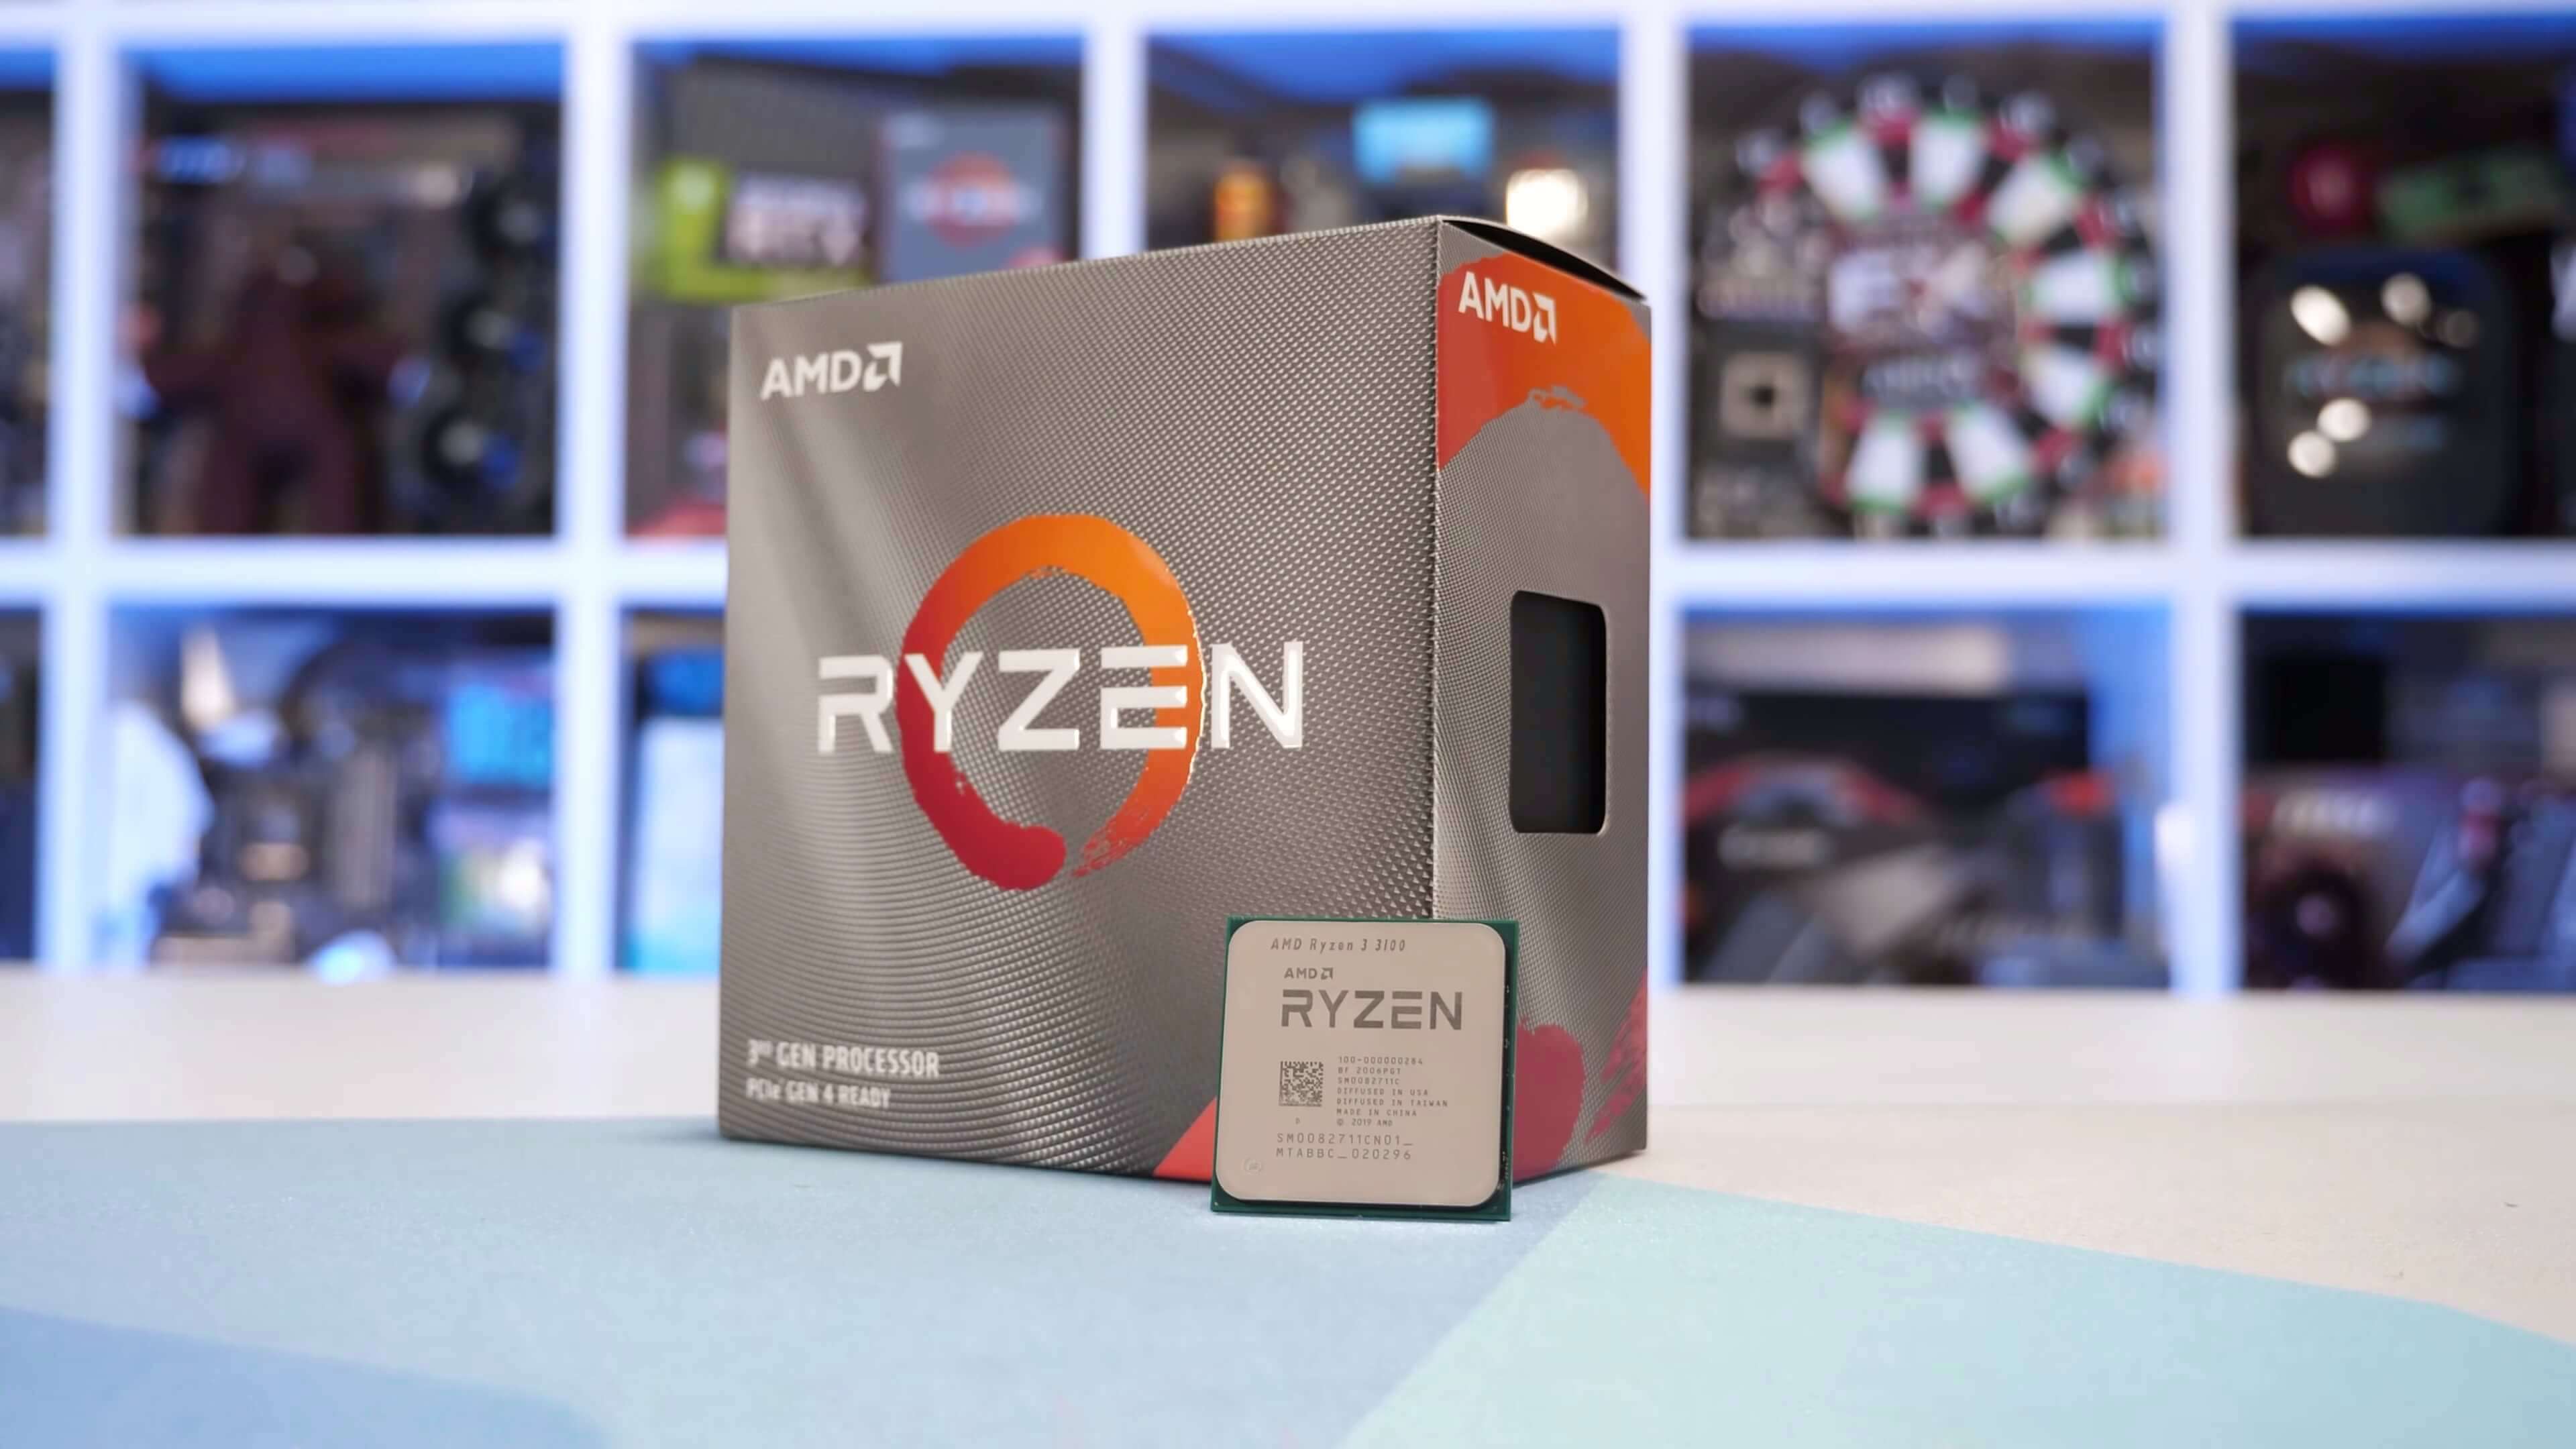 Huh krullen Plantage AMD Ryzen 3 3300X and Ryzen 3 3100 Review | TechSpot